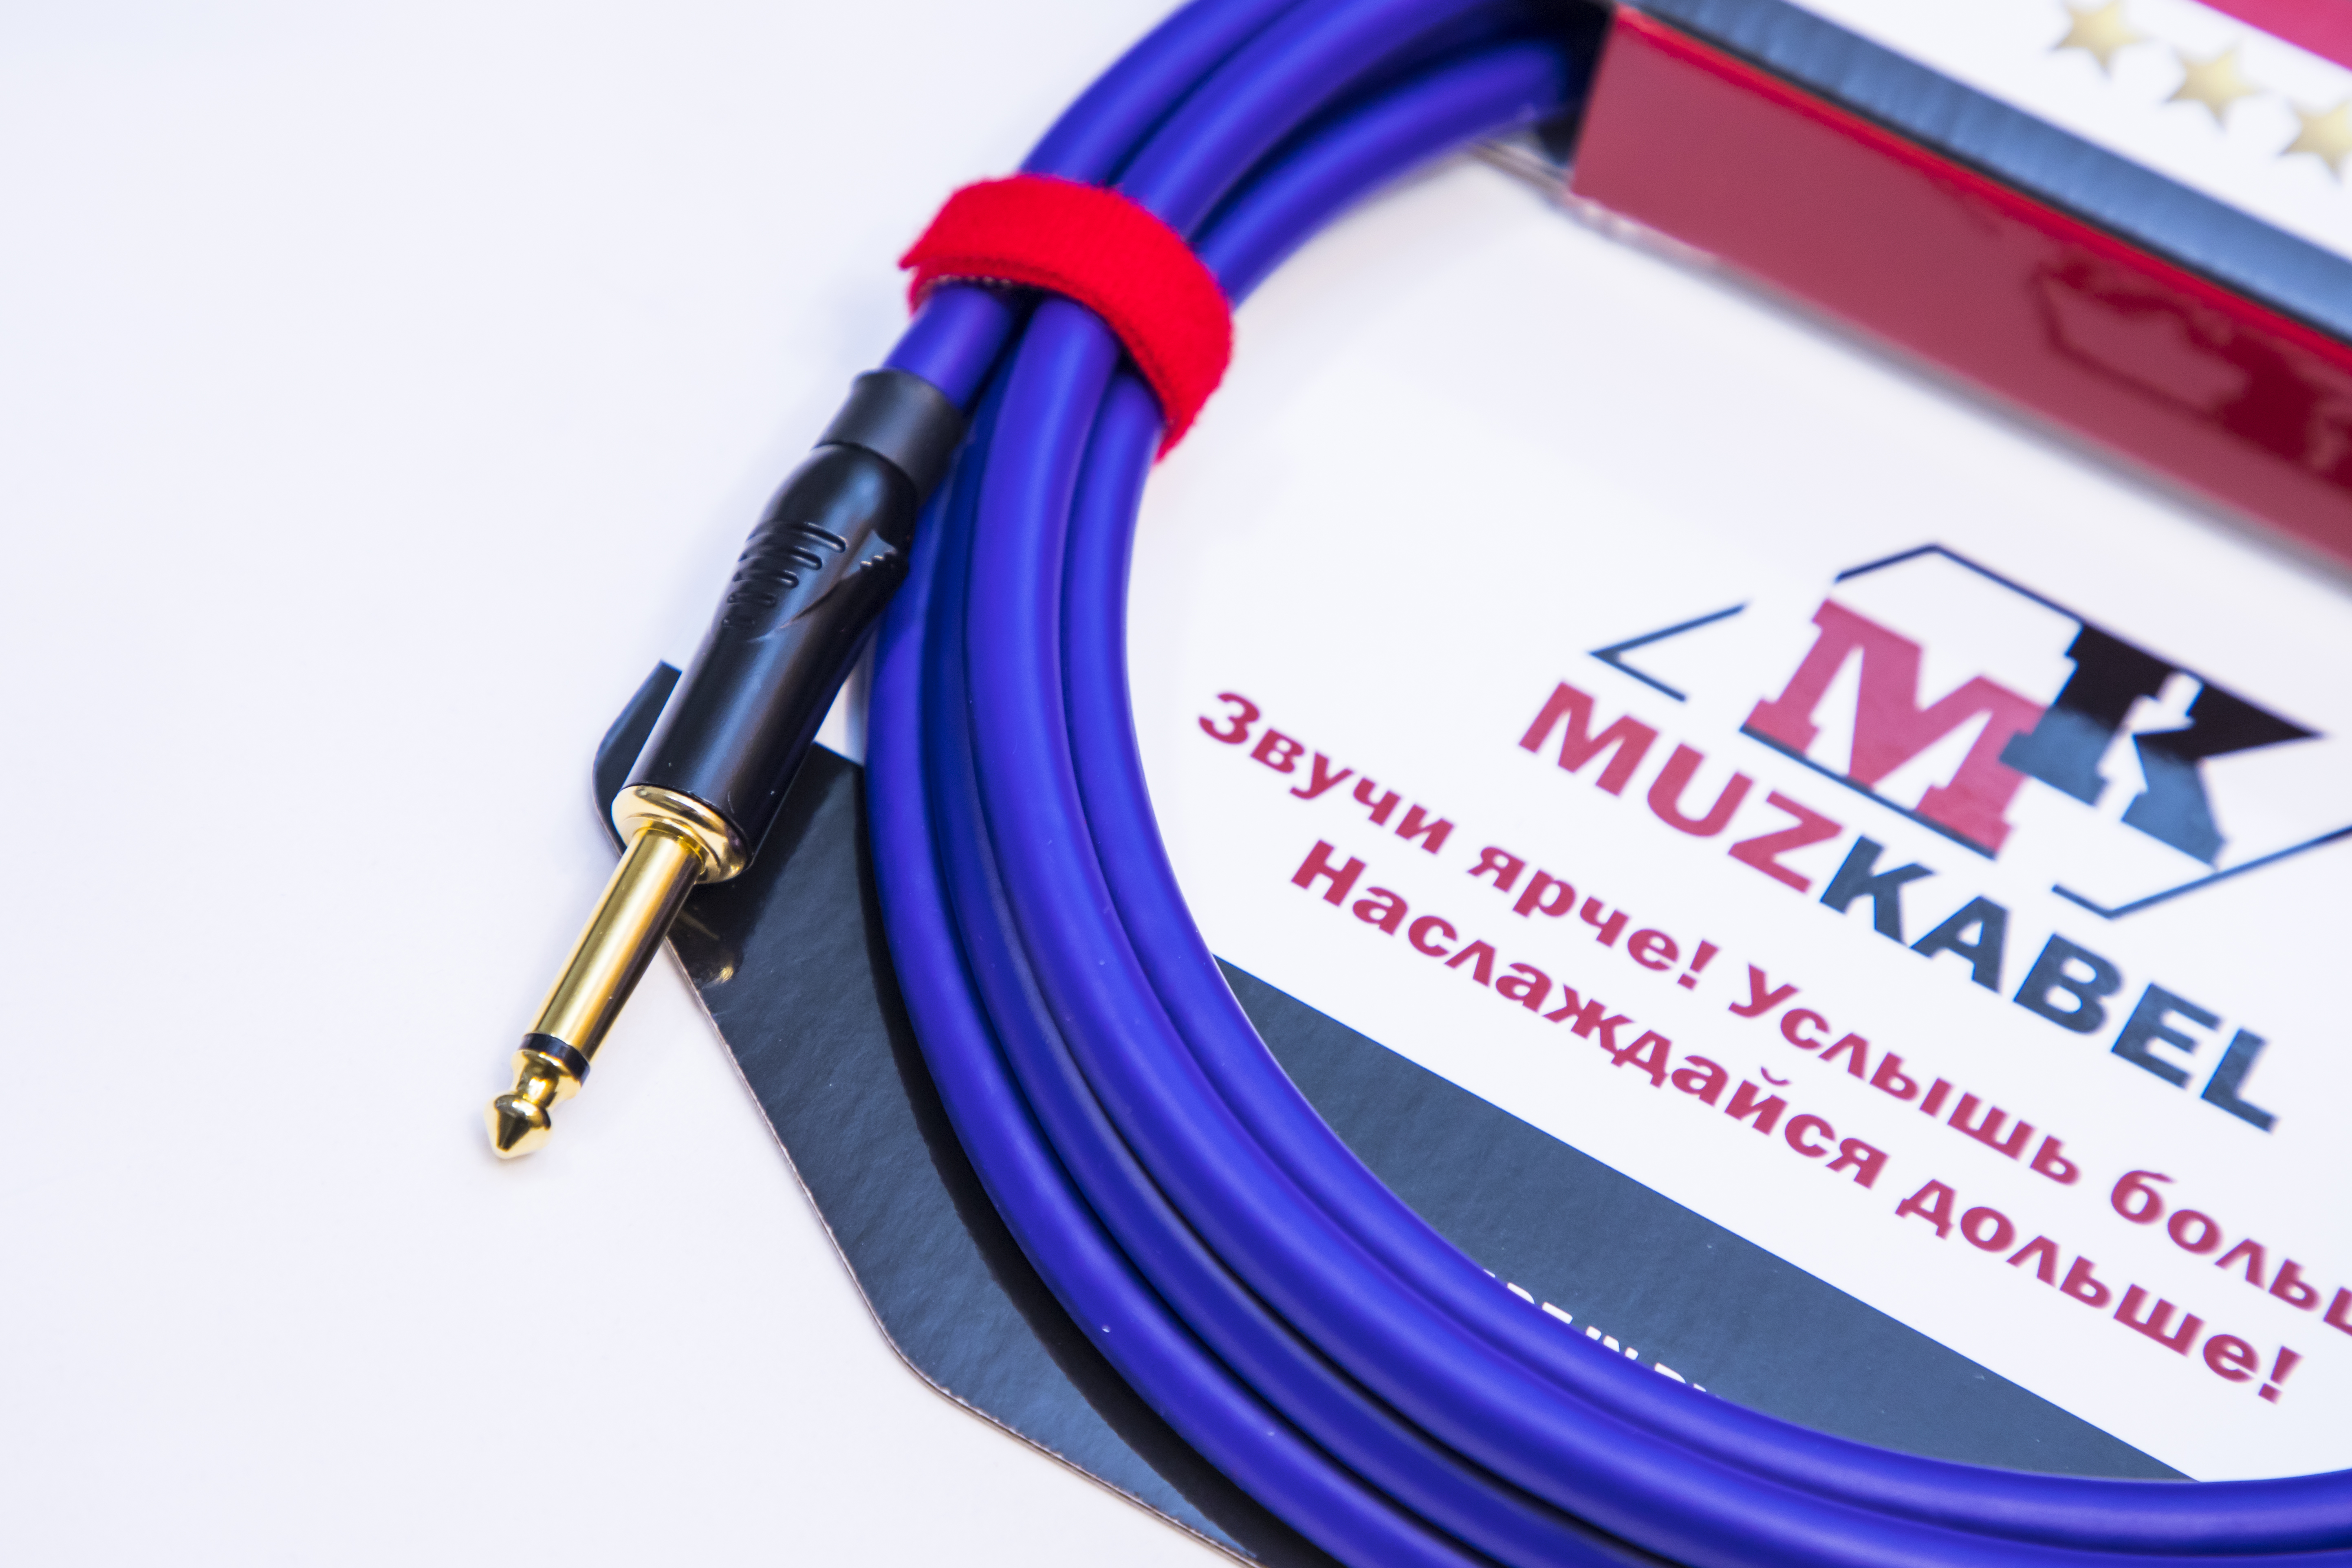 Гитарный кабель MUZKABEL JFNIK4V - 3 метра, JACK (моно) - JACK (моно)